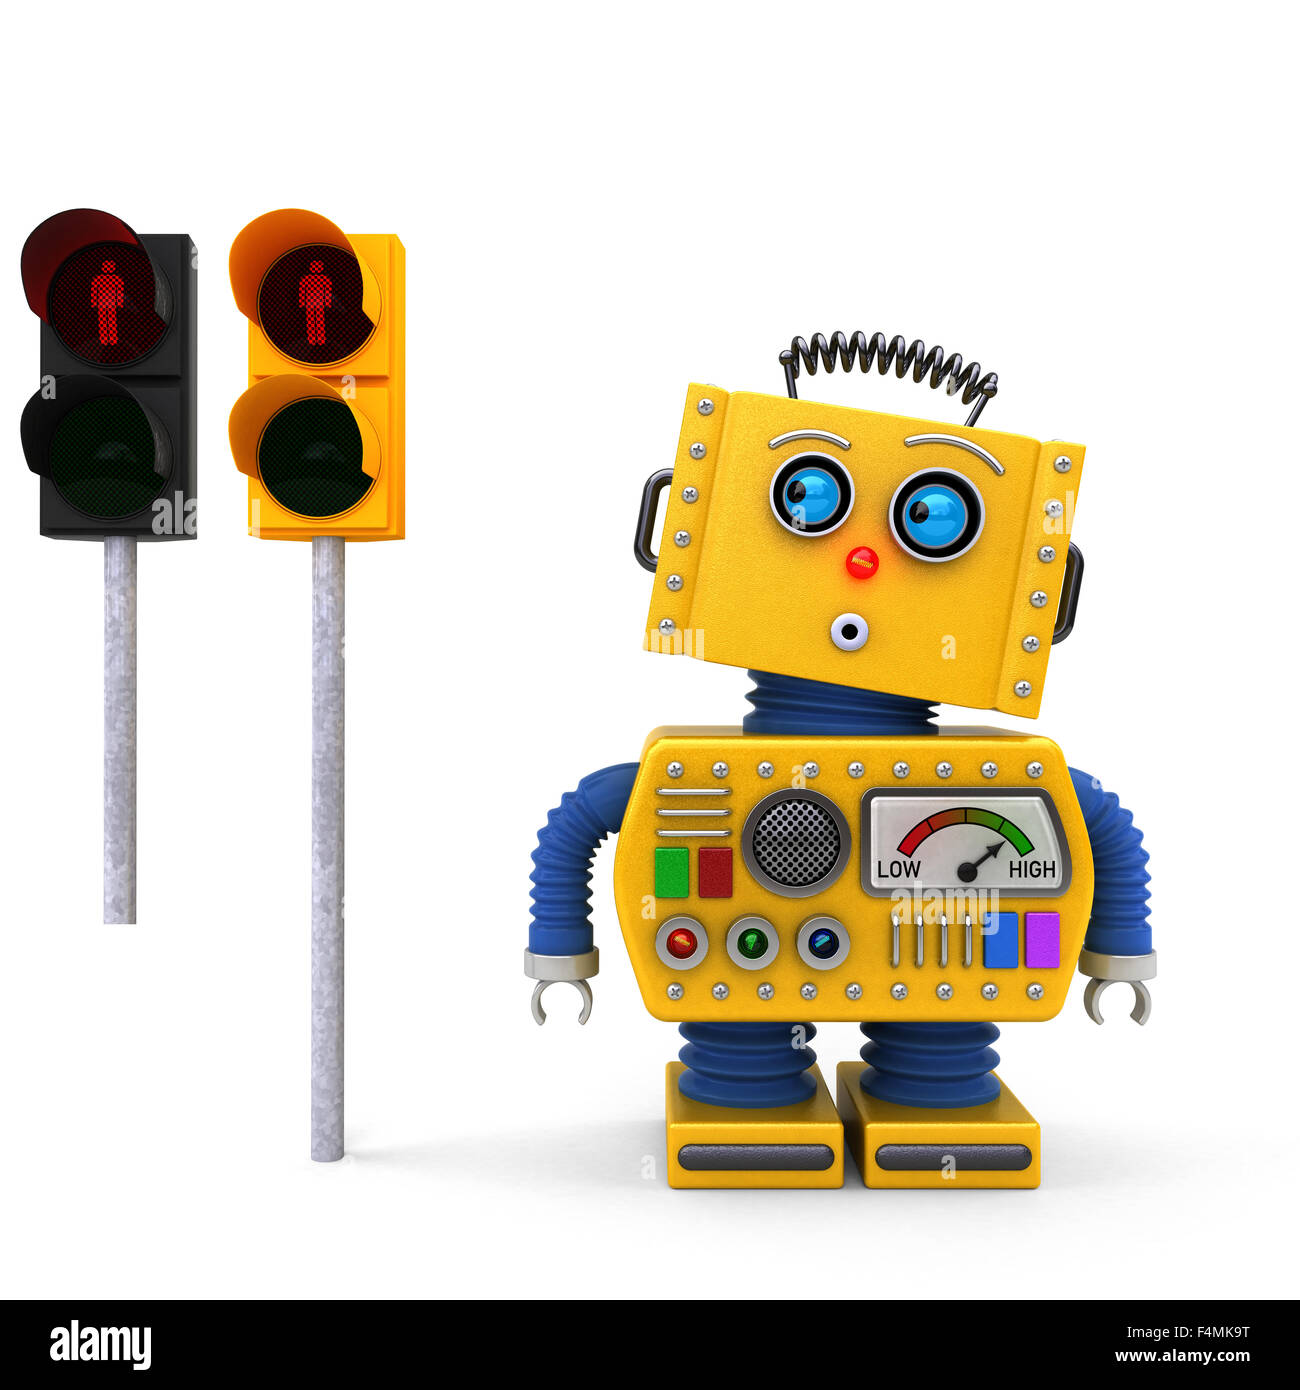 Robot de juguete amarillo esperando en un semáforo en rojo Foto de stock